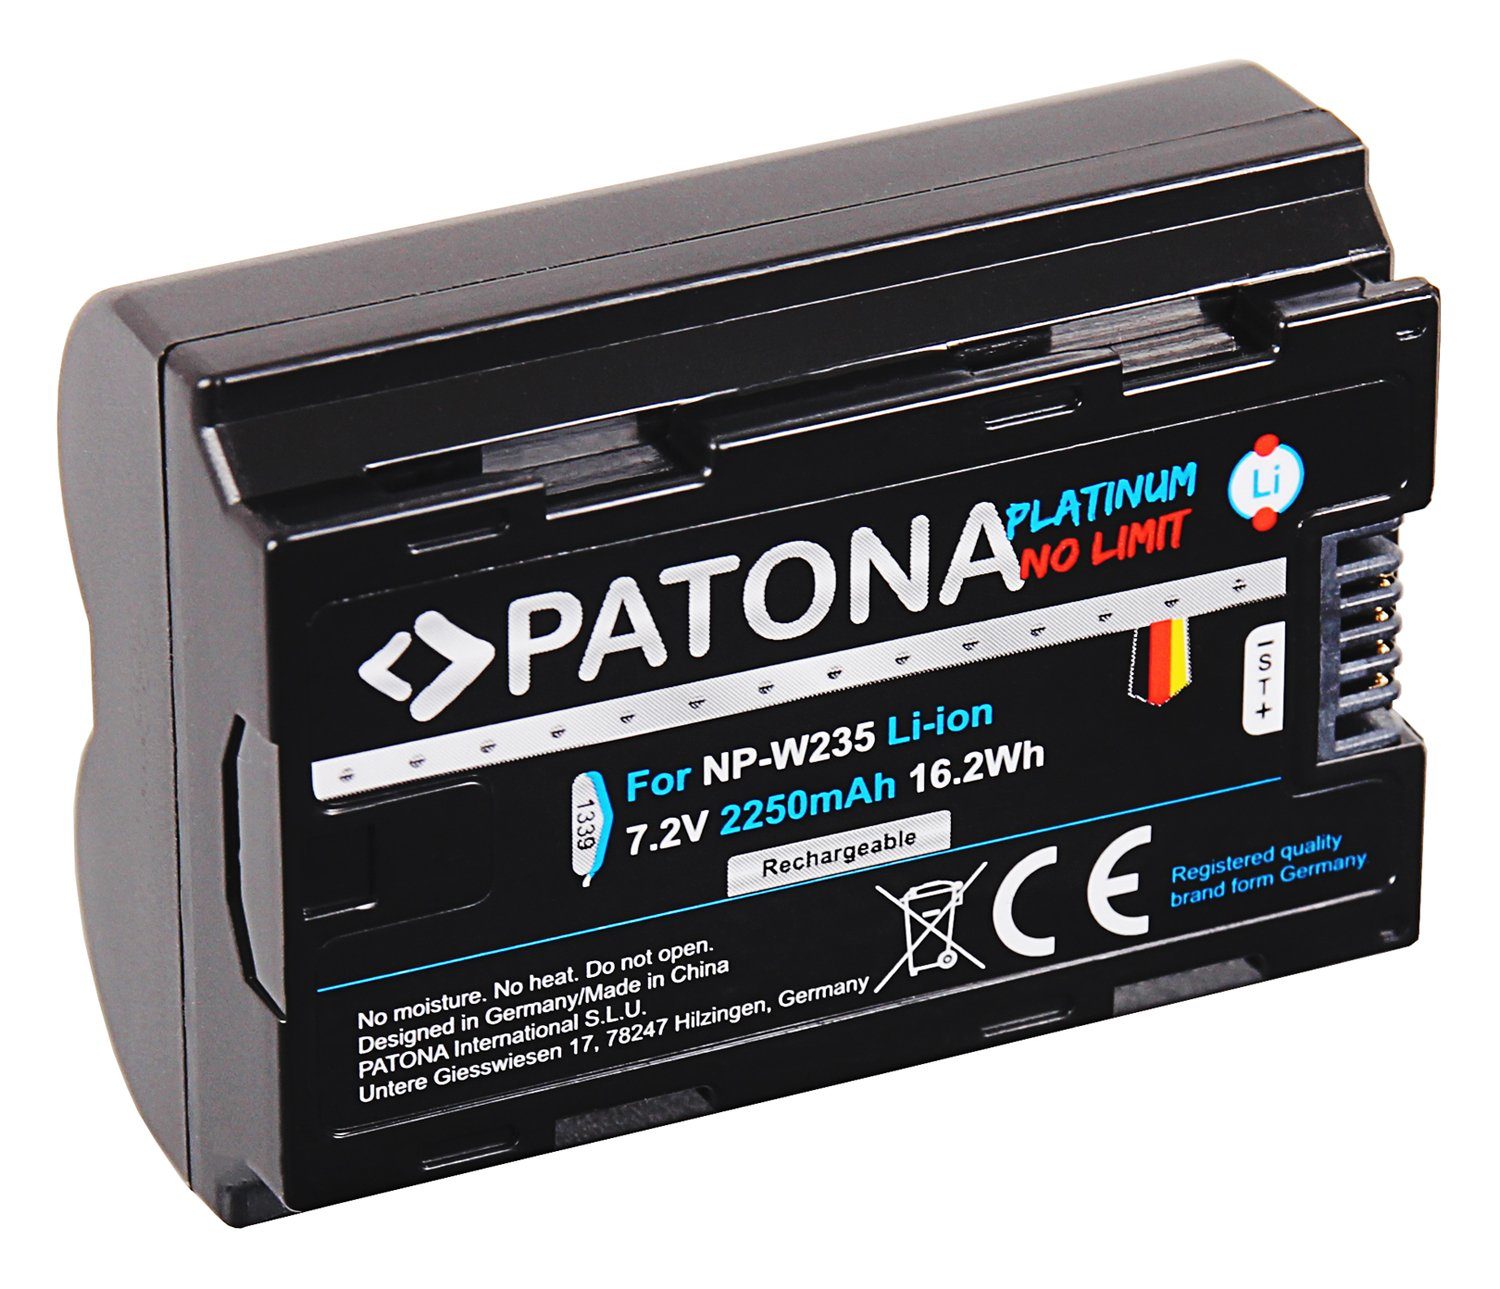 XT4 Platinum Patona die XT-4 mAh Kamera-Akku für NP-W235 Fujifilm Akku / 2250